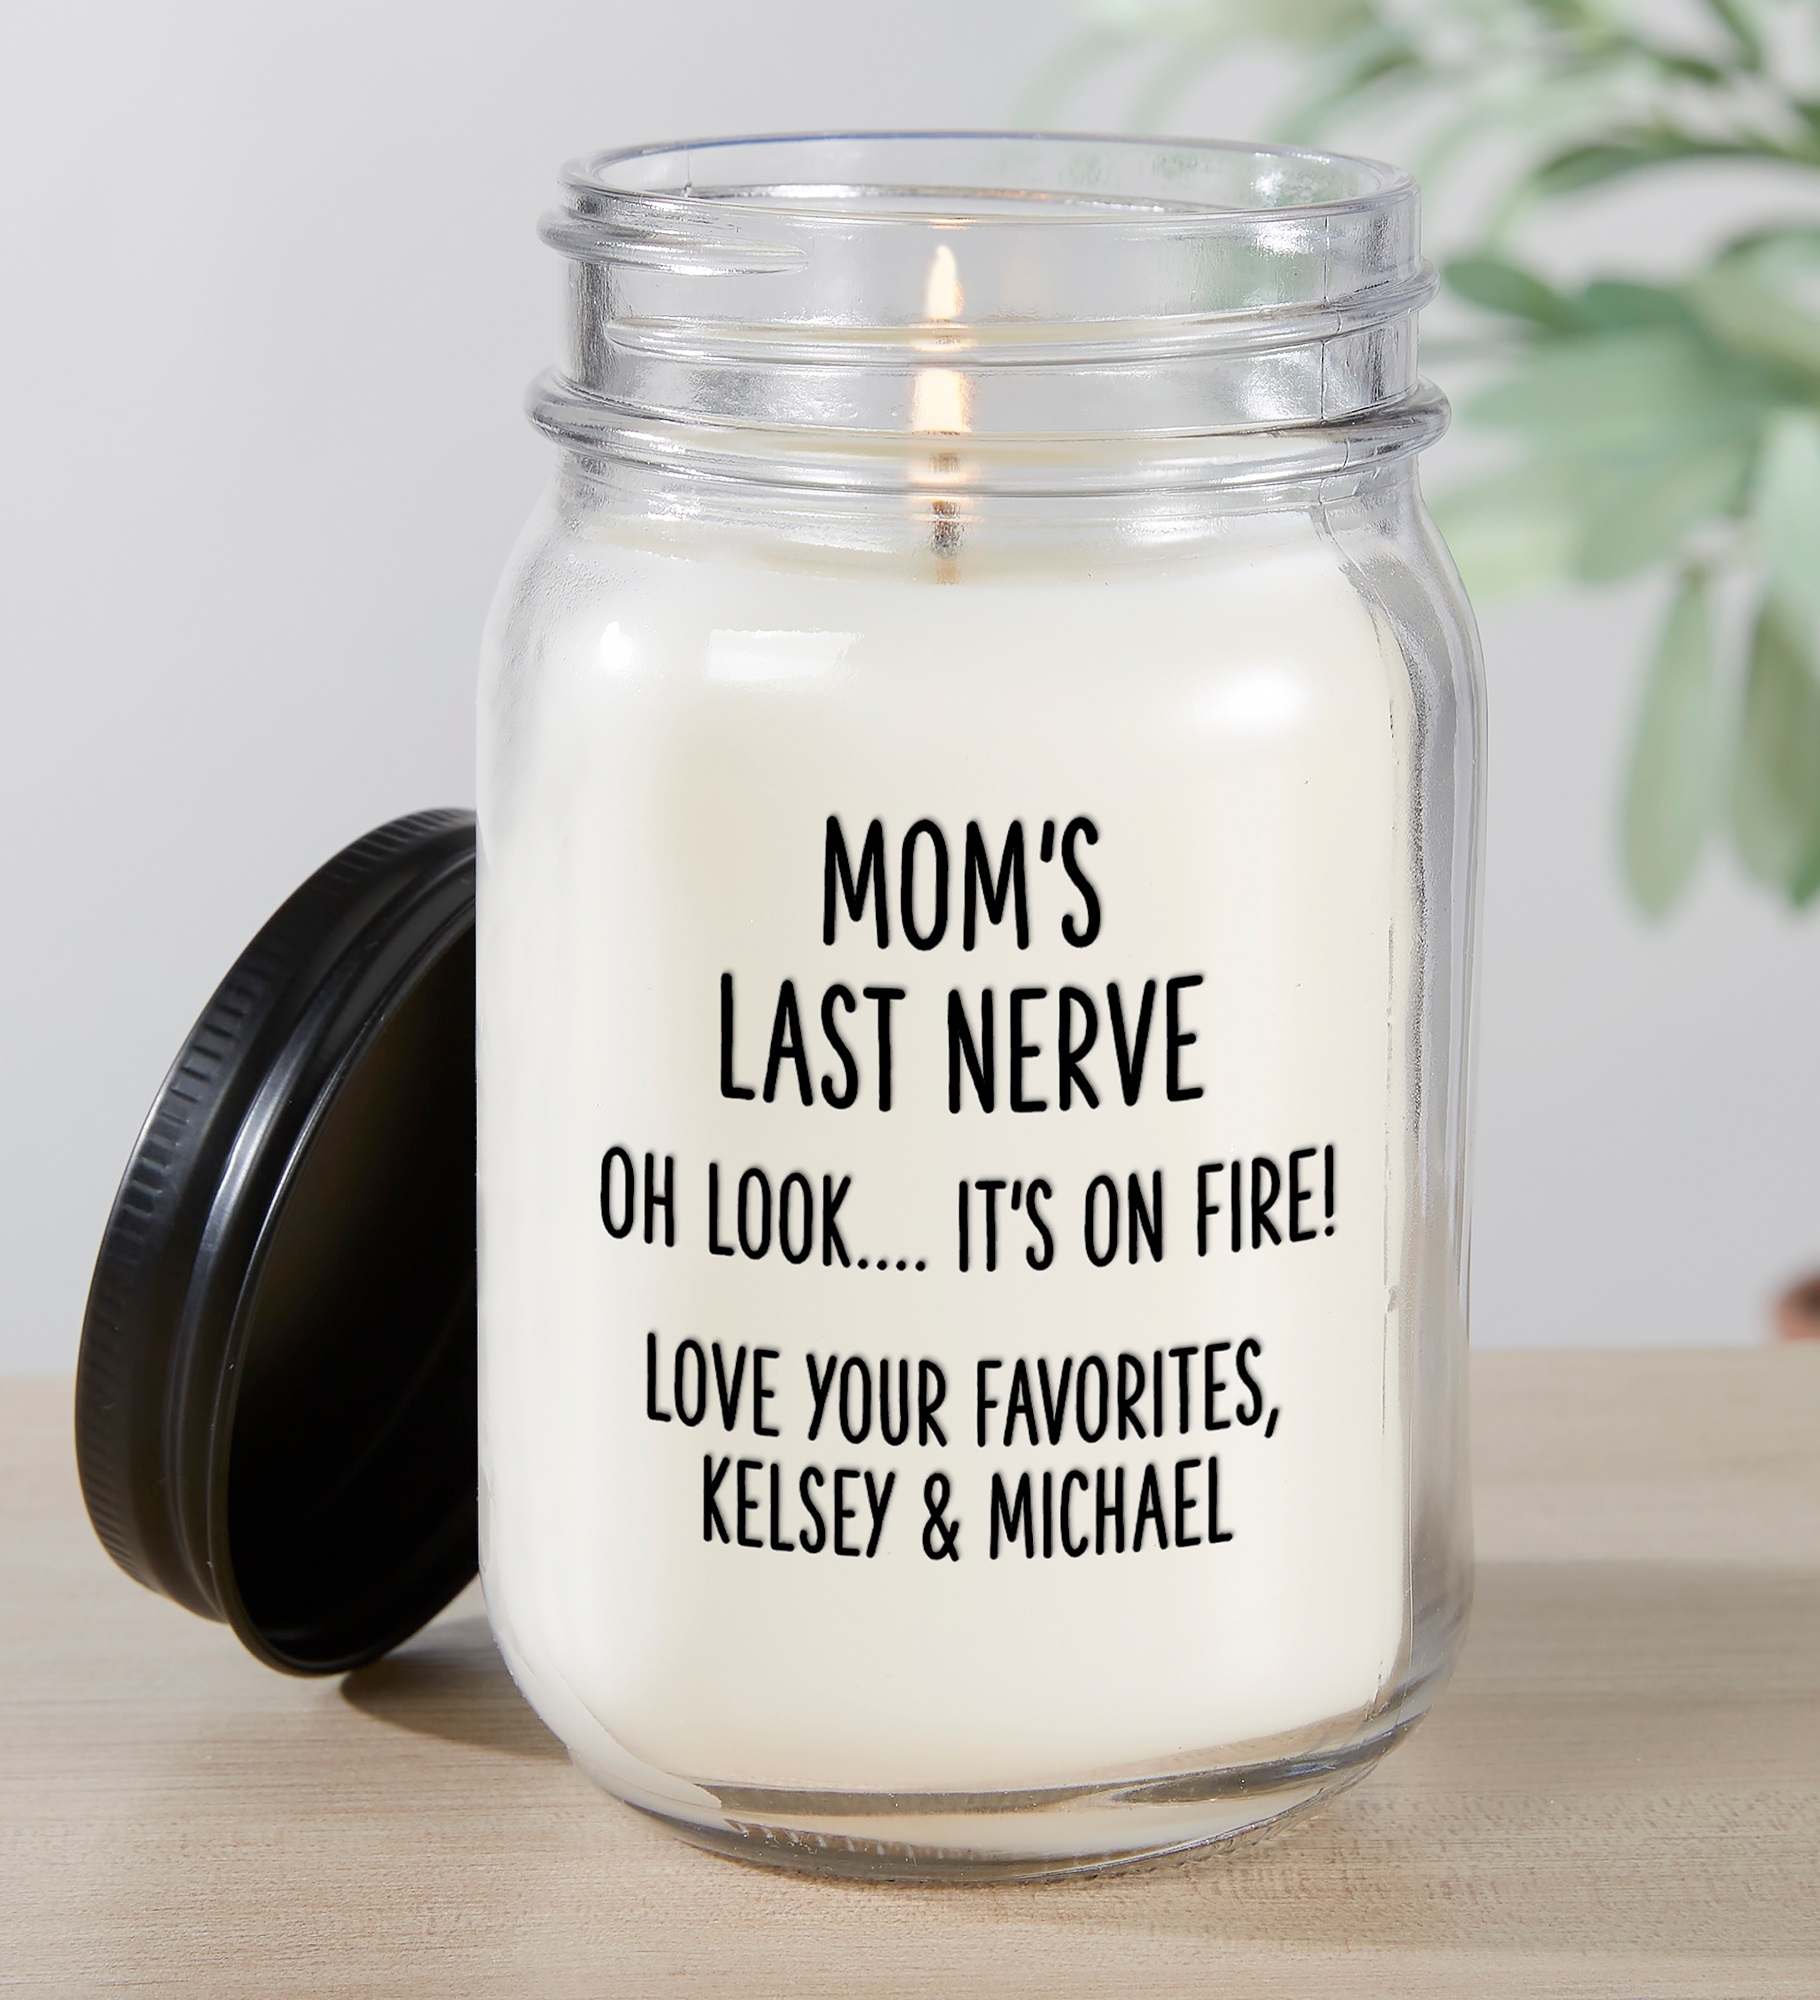 Last Nerve Personalized Mason Jar Candle